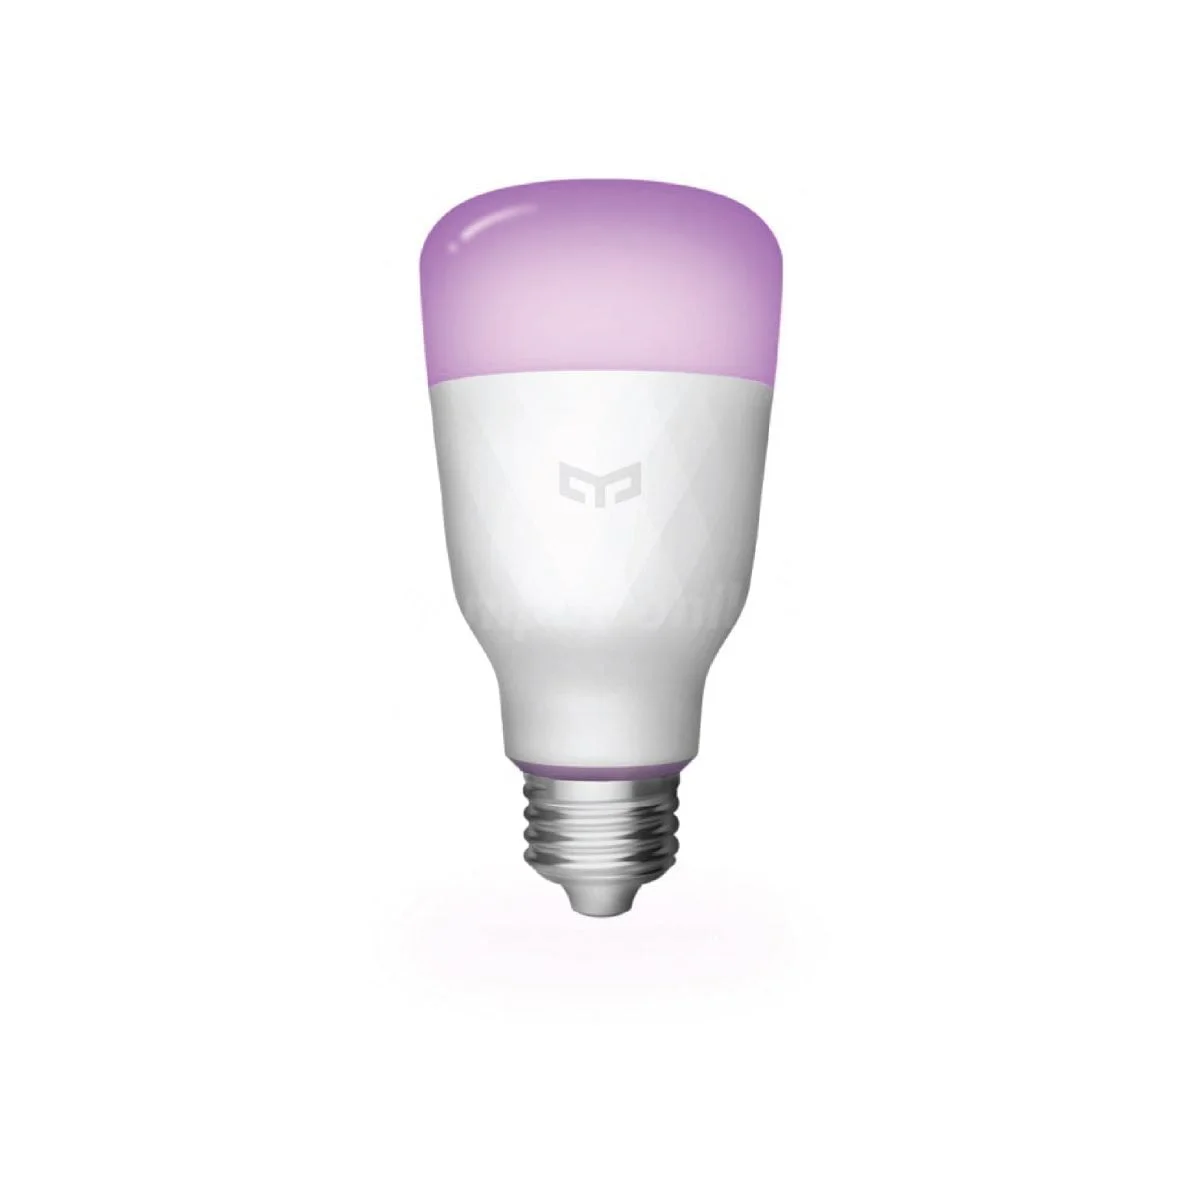 Bulb 23 شاومي سوف تسمح لك لمبة الإضاءة الذكية Yeelight 1S Rgb بإنشاء منزلك الذكي الخاص. يمكنك التحكم فيه بصوتك أو تطبيقك وتحديد درجة الحرارة والقوة التي يجب أن يلمع بها. التدفق الضوئي: 800 لومن درجة حرارة اللون: 1700 K-6500K حامل المصباح: E27 الطاقة المقدرة: 8.5 واط &Nbsp; 16 مليون لون مع تمكين Wifi والتحكم الصوتي والتحكم في التطبيقات ومزامنة الموسيقى &Lt;Img Class=&Quot;Alignnone Wp-Image-8061 Size-Full&Quot; Src=&Quot;Https://Lablaab.com/Wp-Content/Uploads/2020/04/Bulb-27-2-Scaled.jpg&Quot; Alt=&Quot;&Quot; Width=&Quot;2560&Quot; Height=&Quot;357&Quot;&Gt; &Nbsp; ييلايت سمارت لمبة لمبة يلايت الذكية 1S (ألوان)